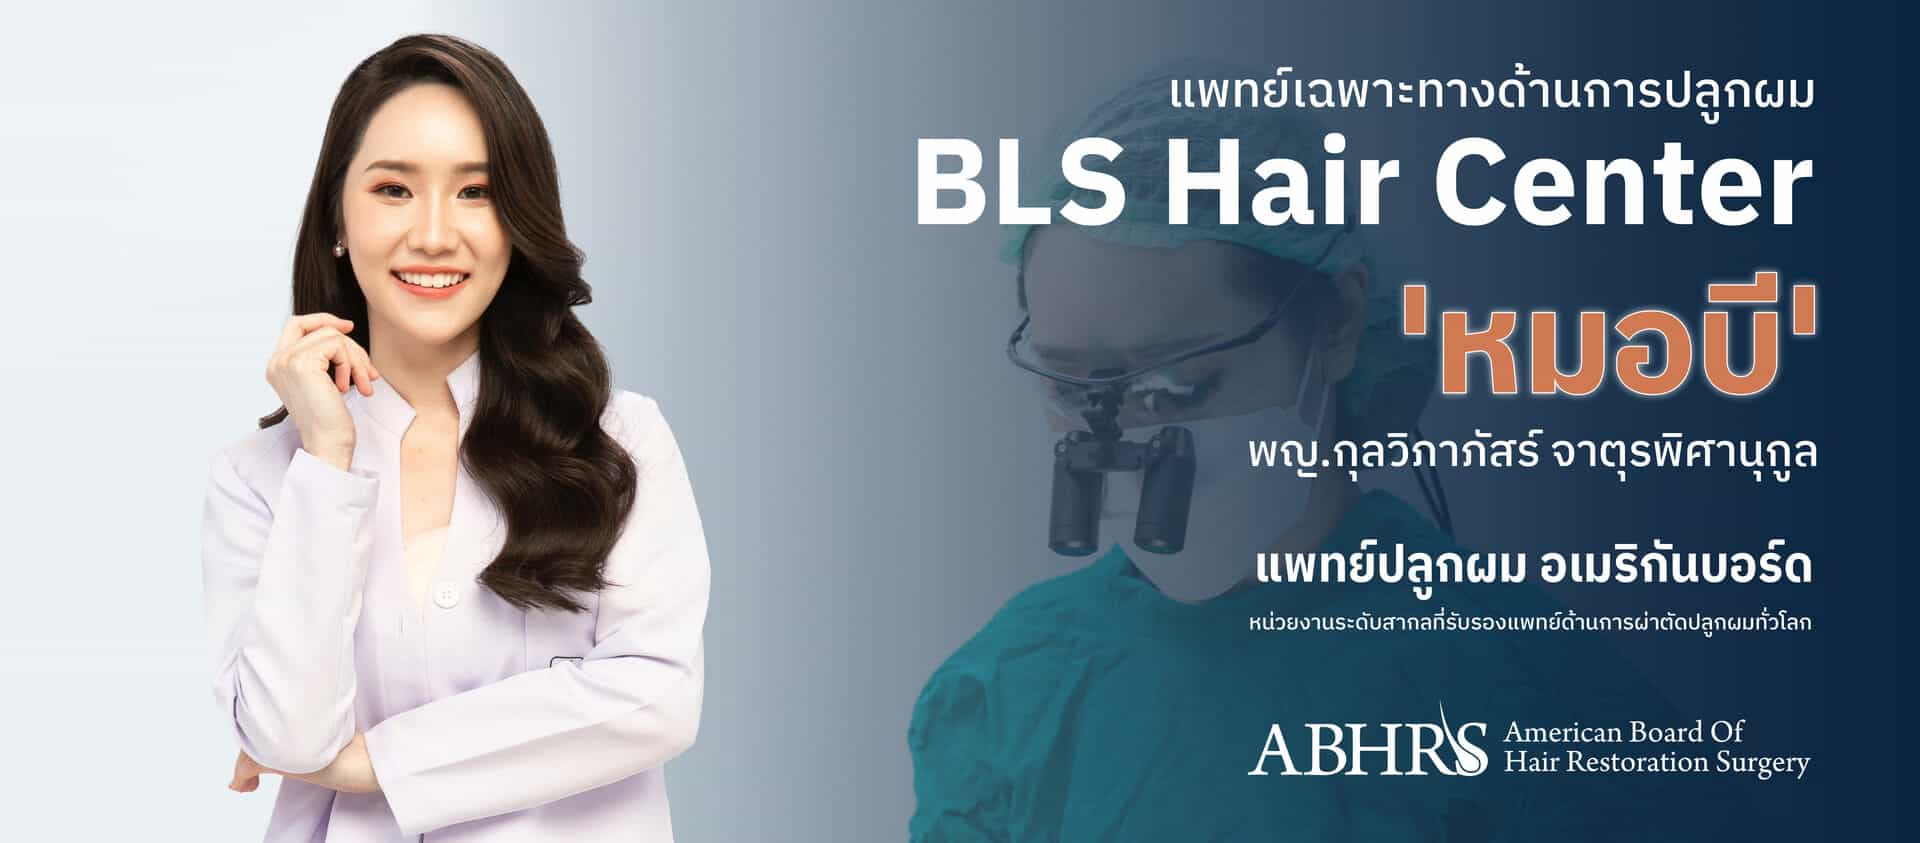 แพทย์เฉพาะทางด้านการปลูกผม BLS Hair Center "หมอบี พญ.กุลวิภาภัสร์ จาตุรพิศานุกูล แพทย์ปลูกผม อเมริกันบอร์ด